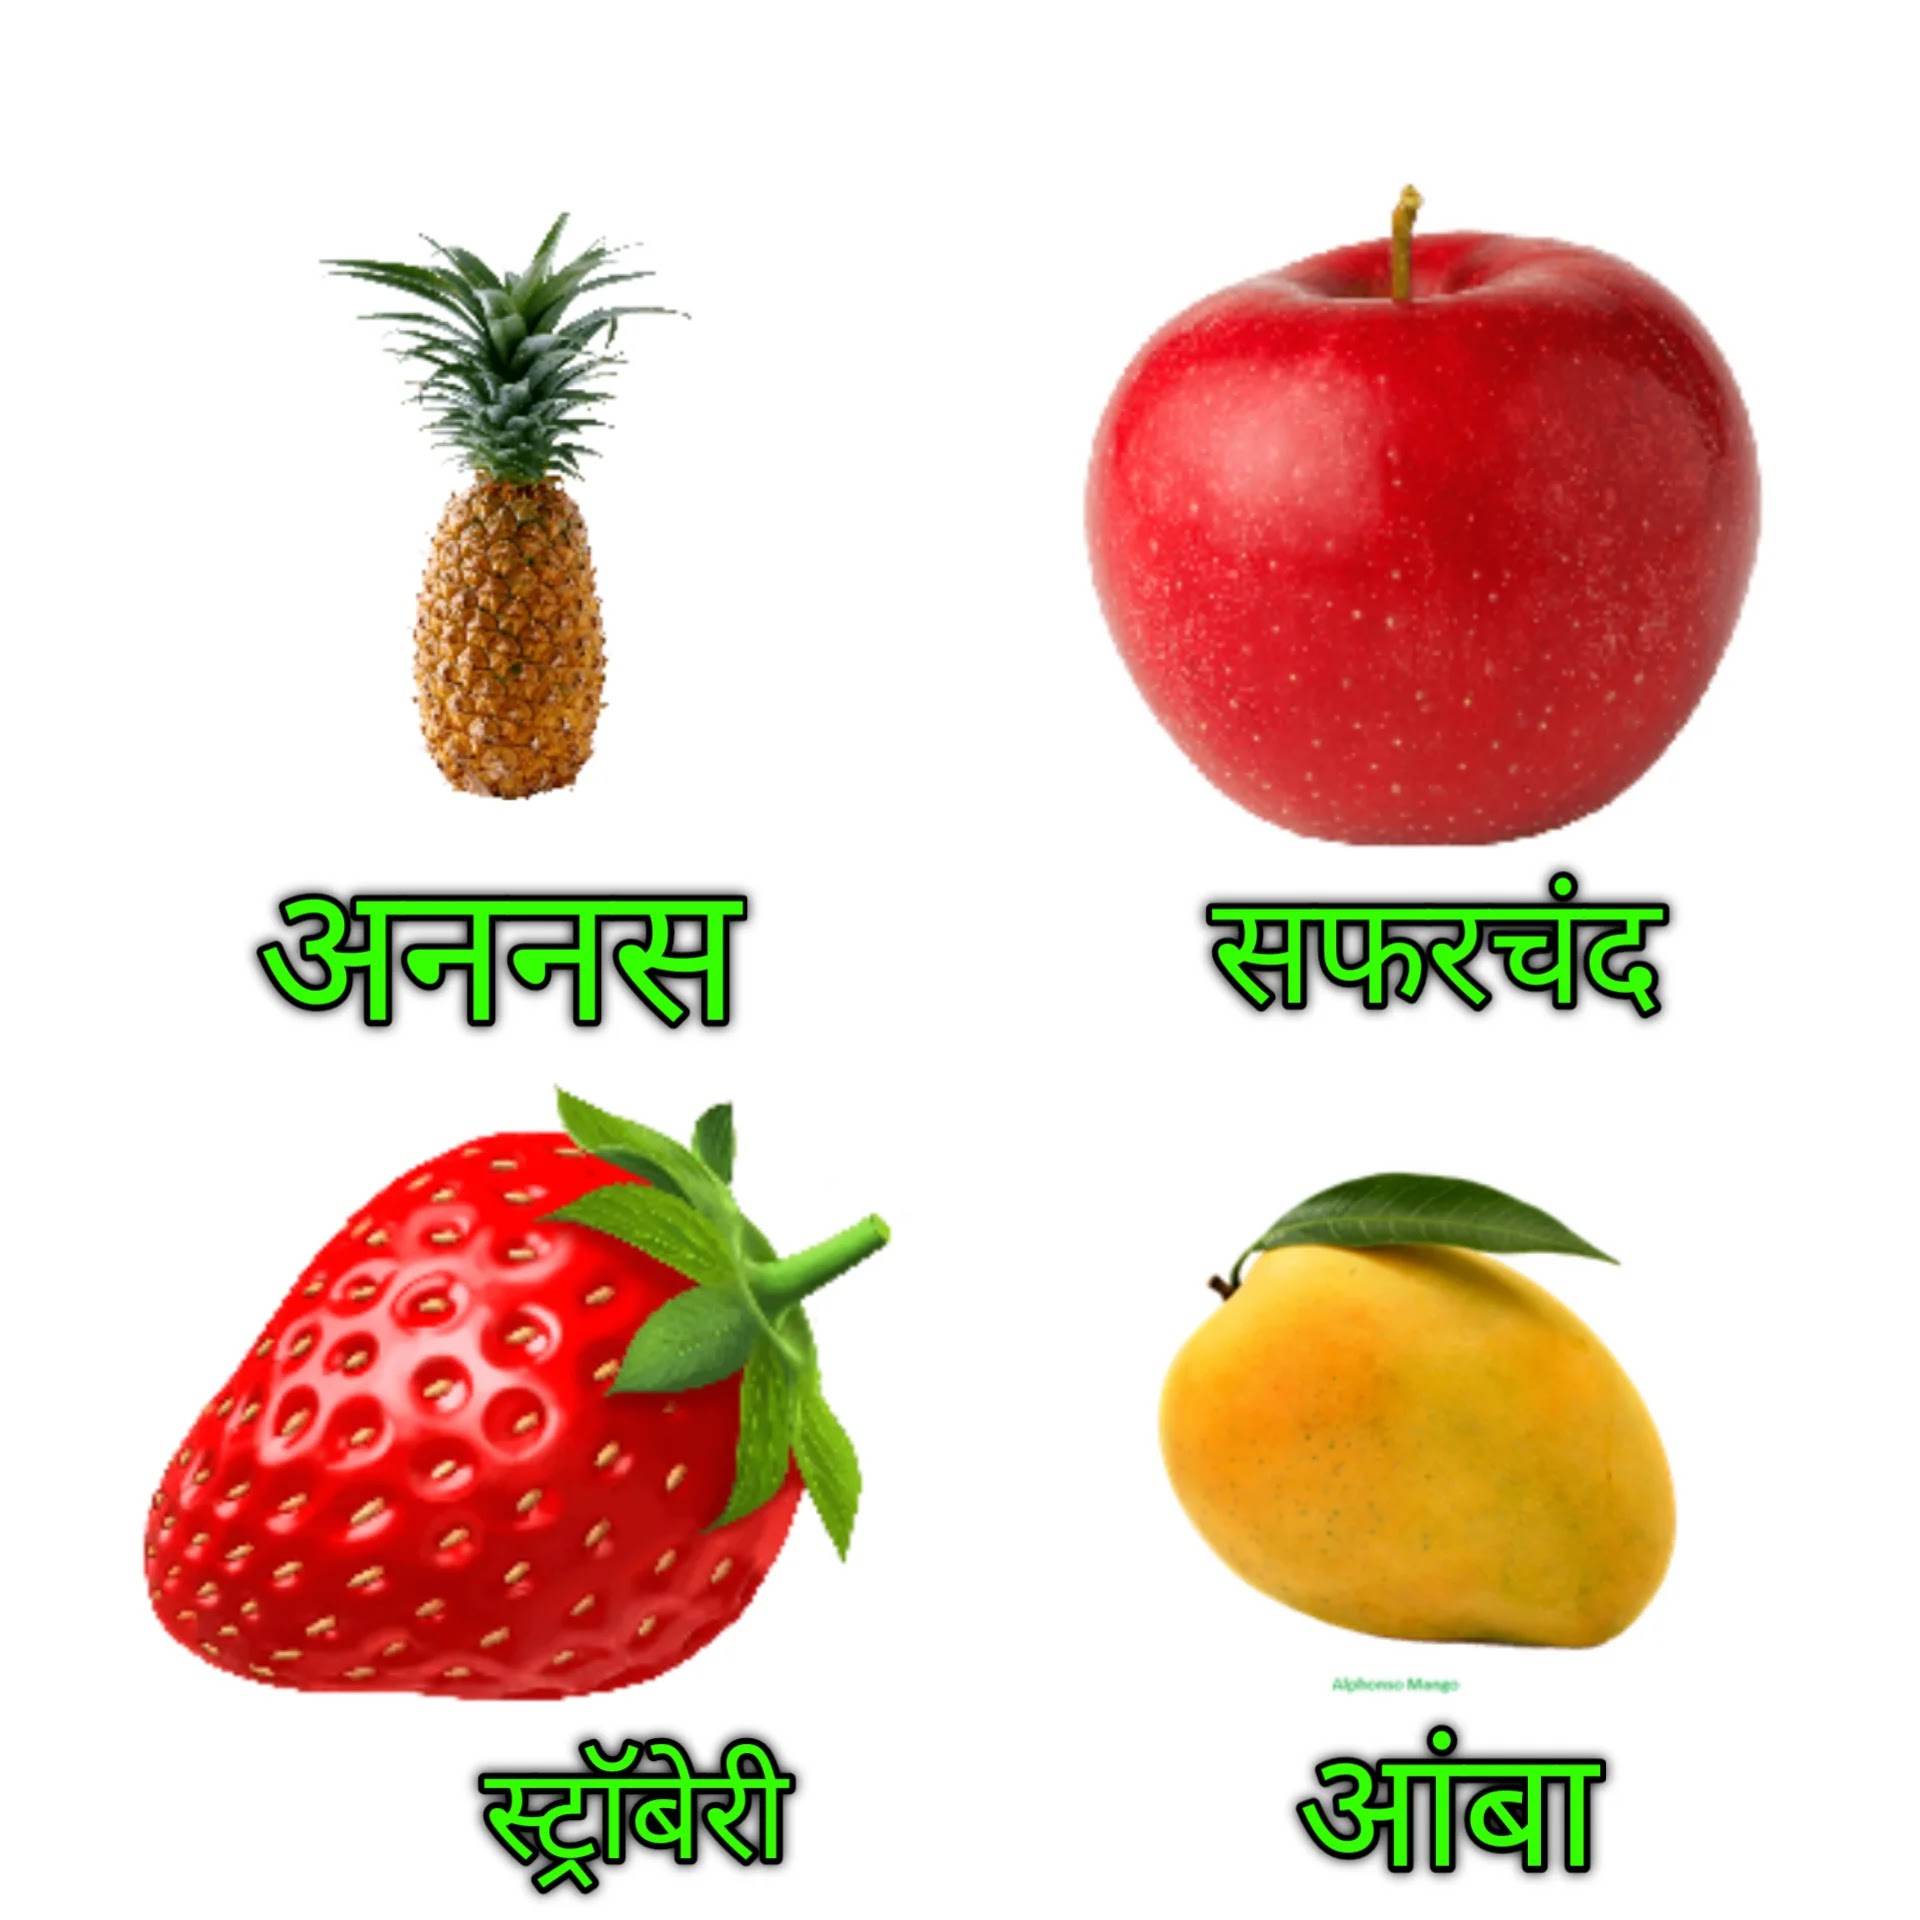 Fruits images marathi, fruits names in Marathi,